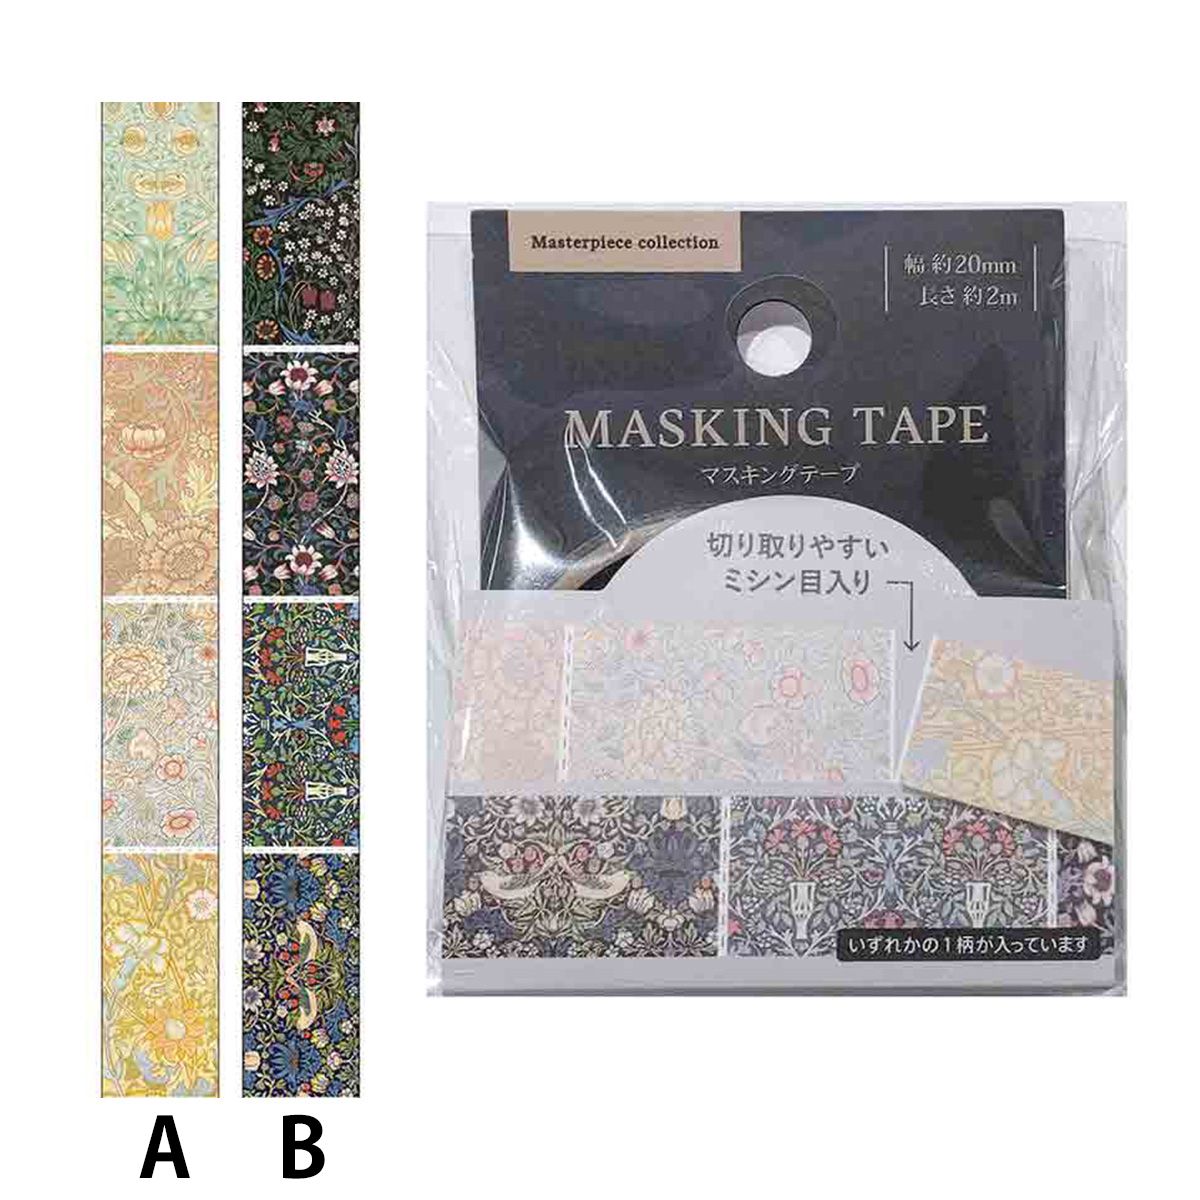 マスキングテープ 20mm×2m マスターピースコレクション/WM 0356/364373